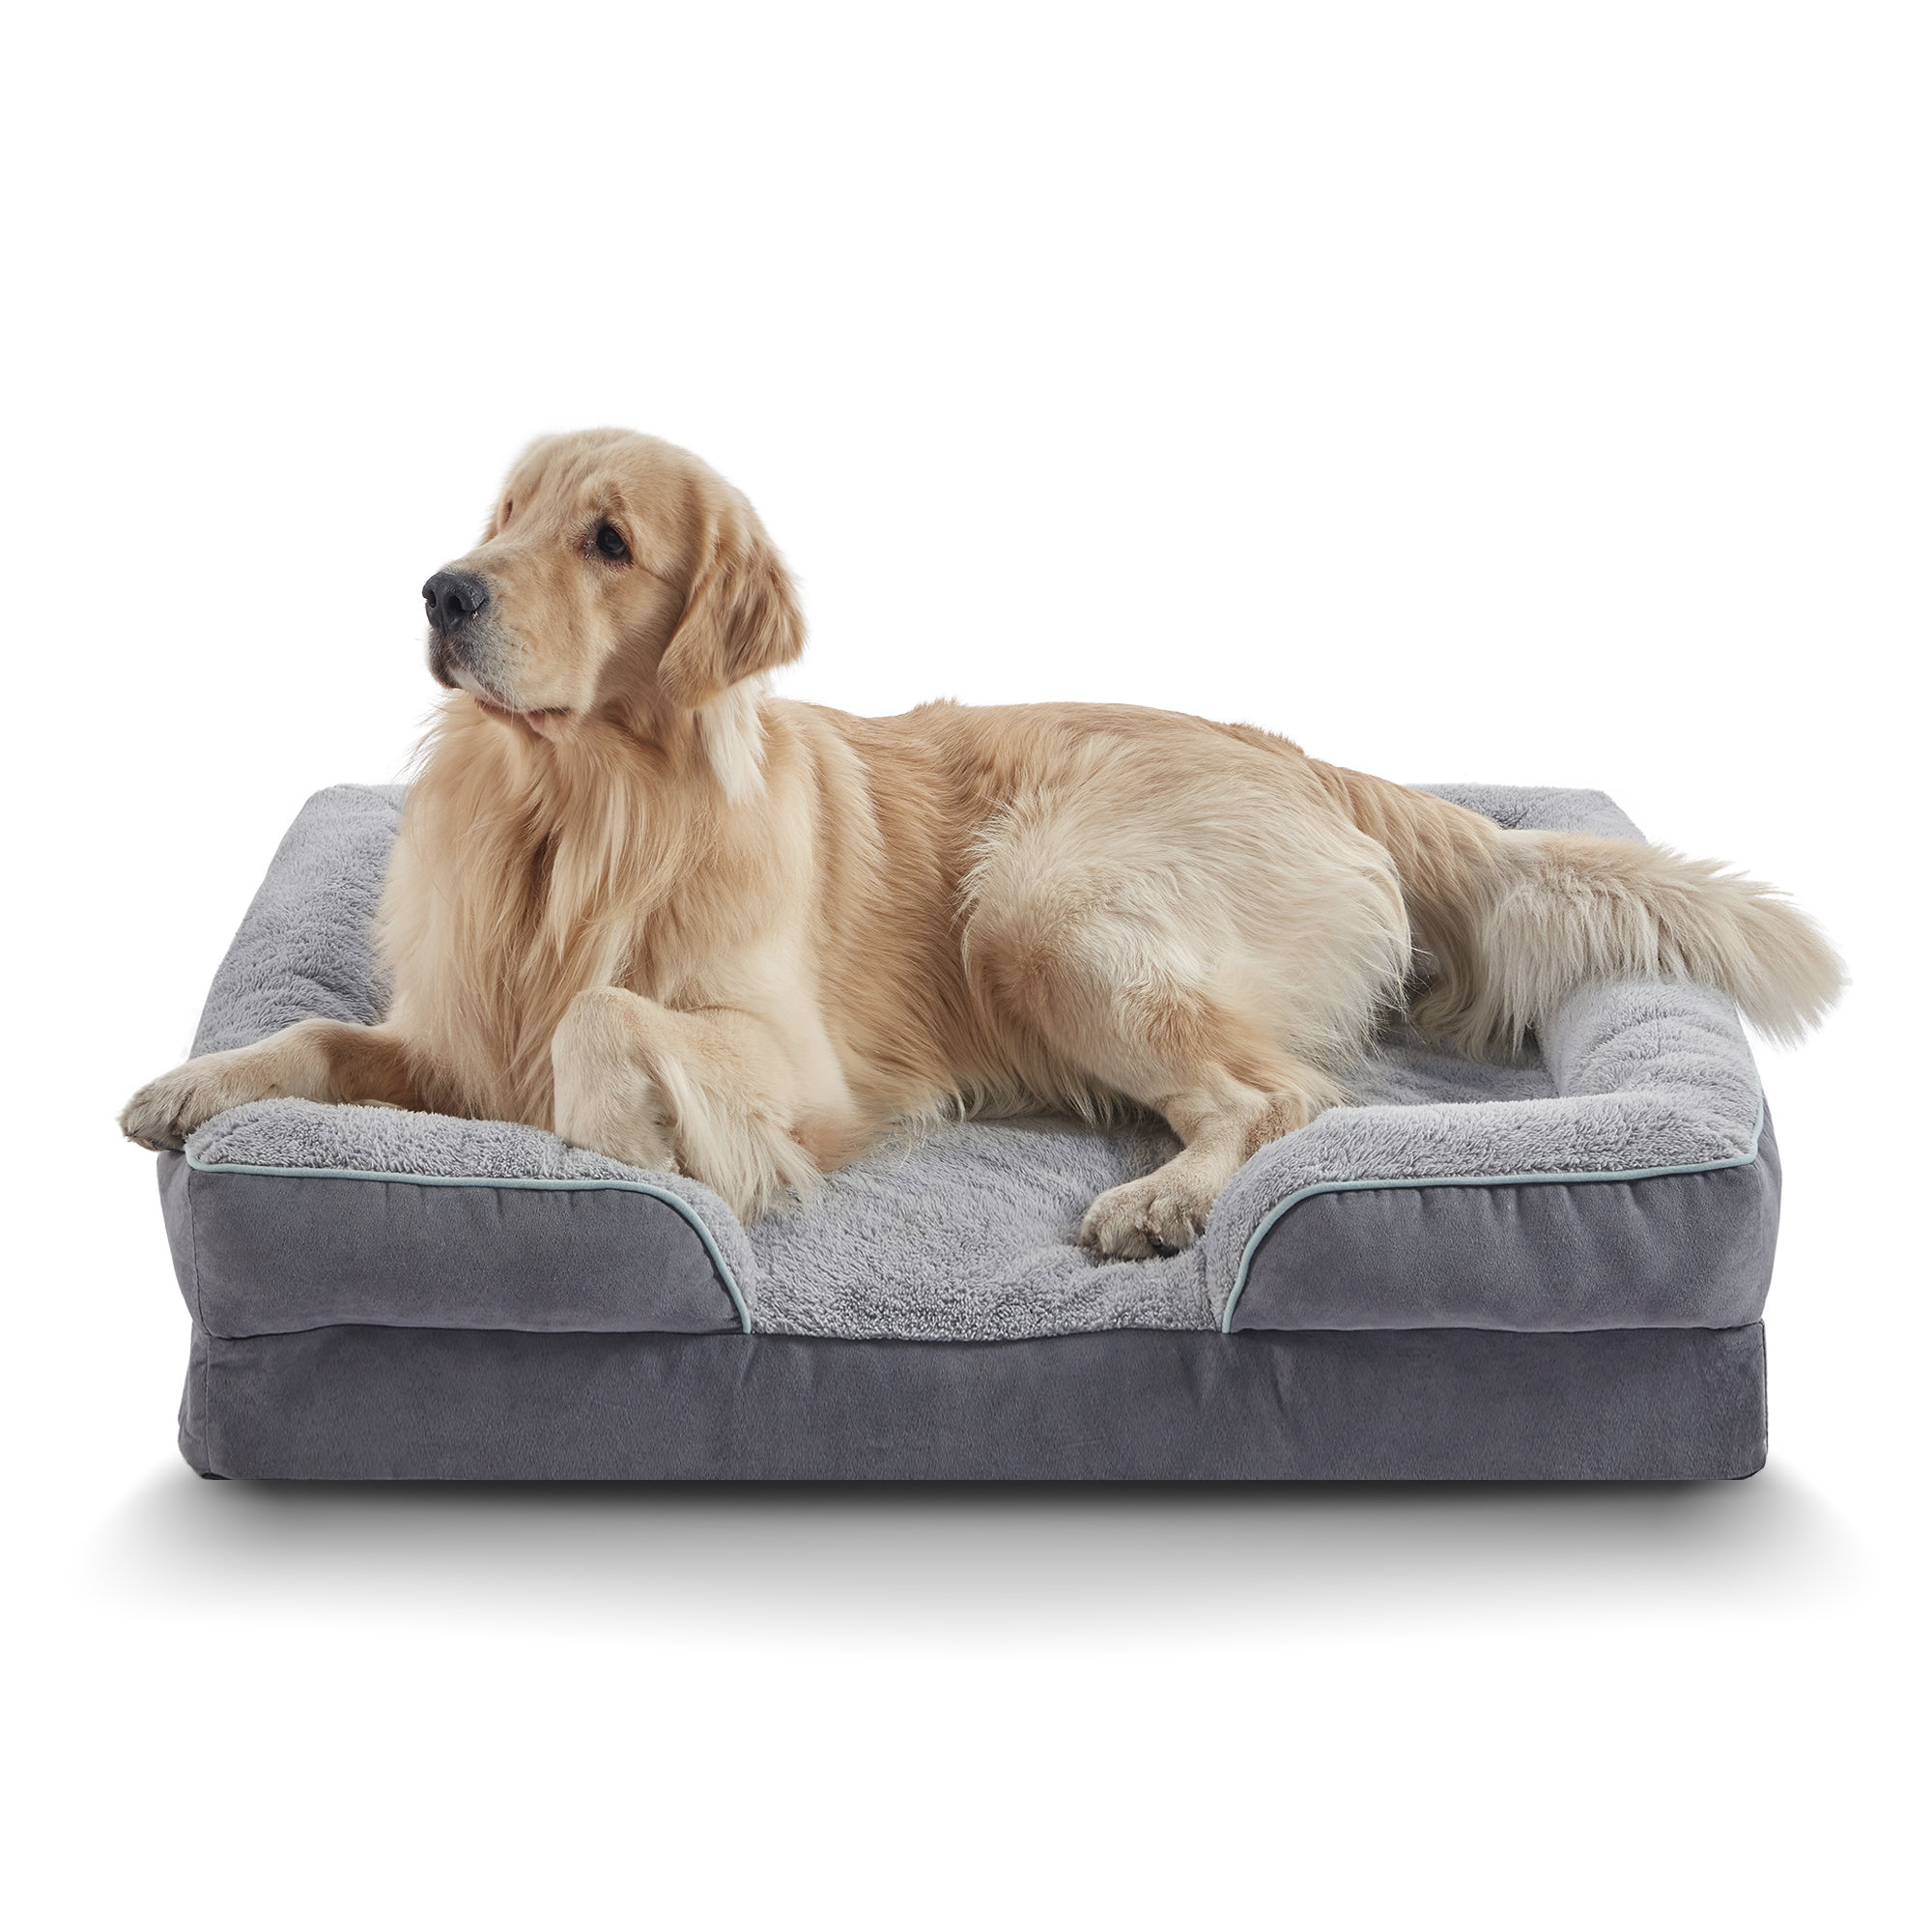 BingoPaw Grand canapé-lit pour chien : coussin orthopédique en